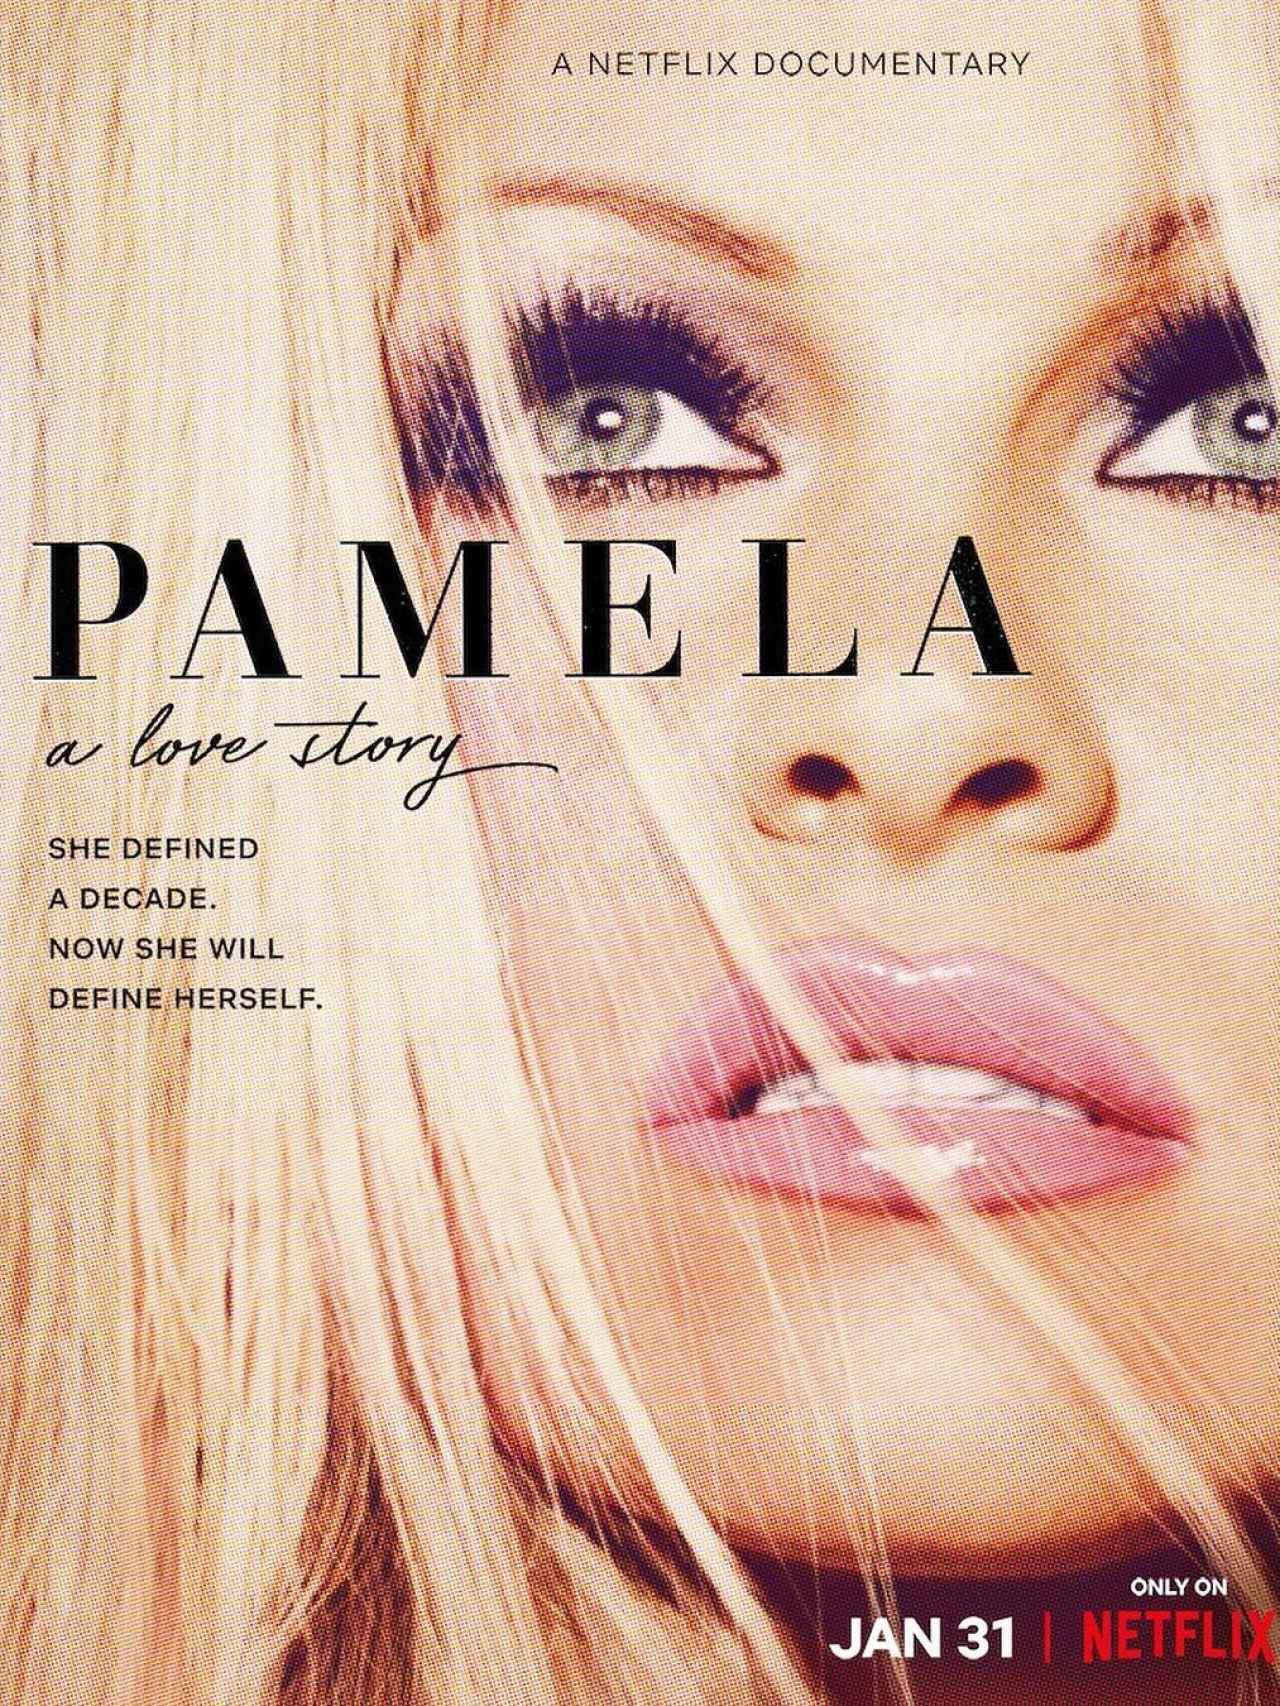 Cartel de la película de Pamela Anderson.